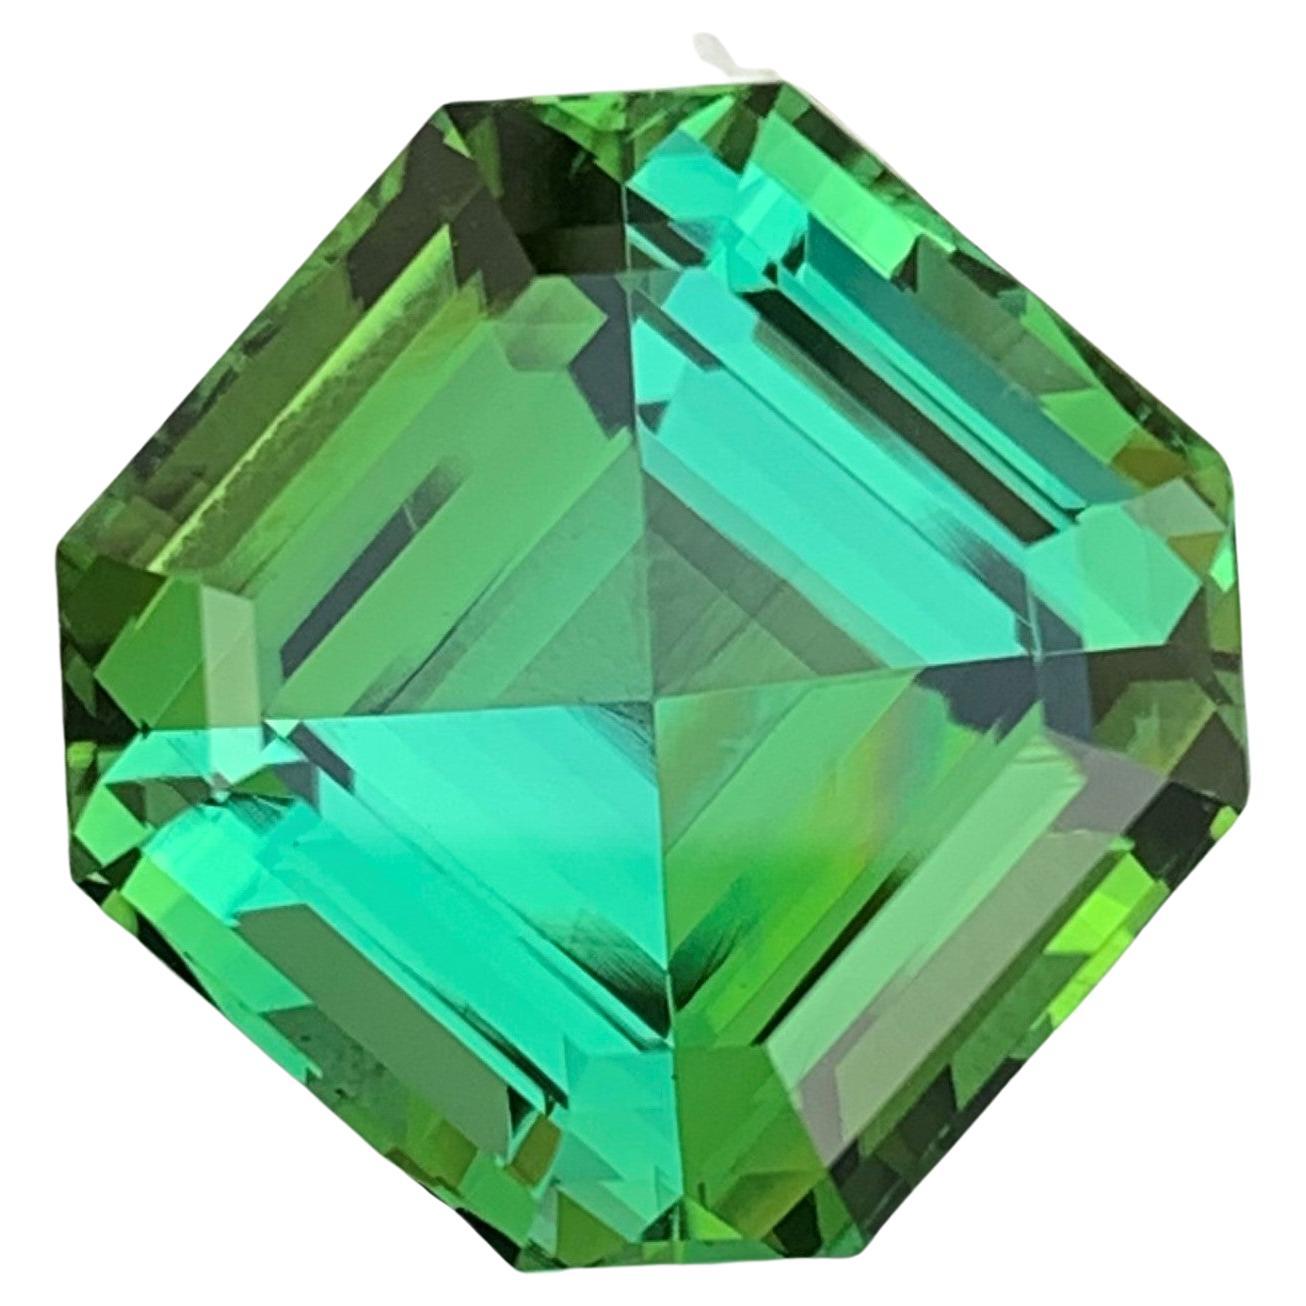 Gorgeous Mint Green Loose Tourmaline Jewelry Gem 24.20 Carat Asscher Cut For Sale